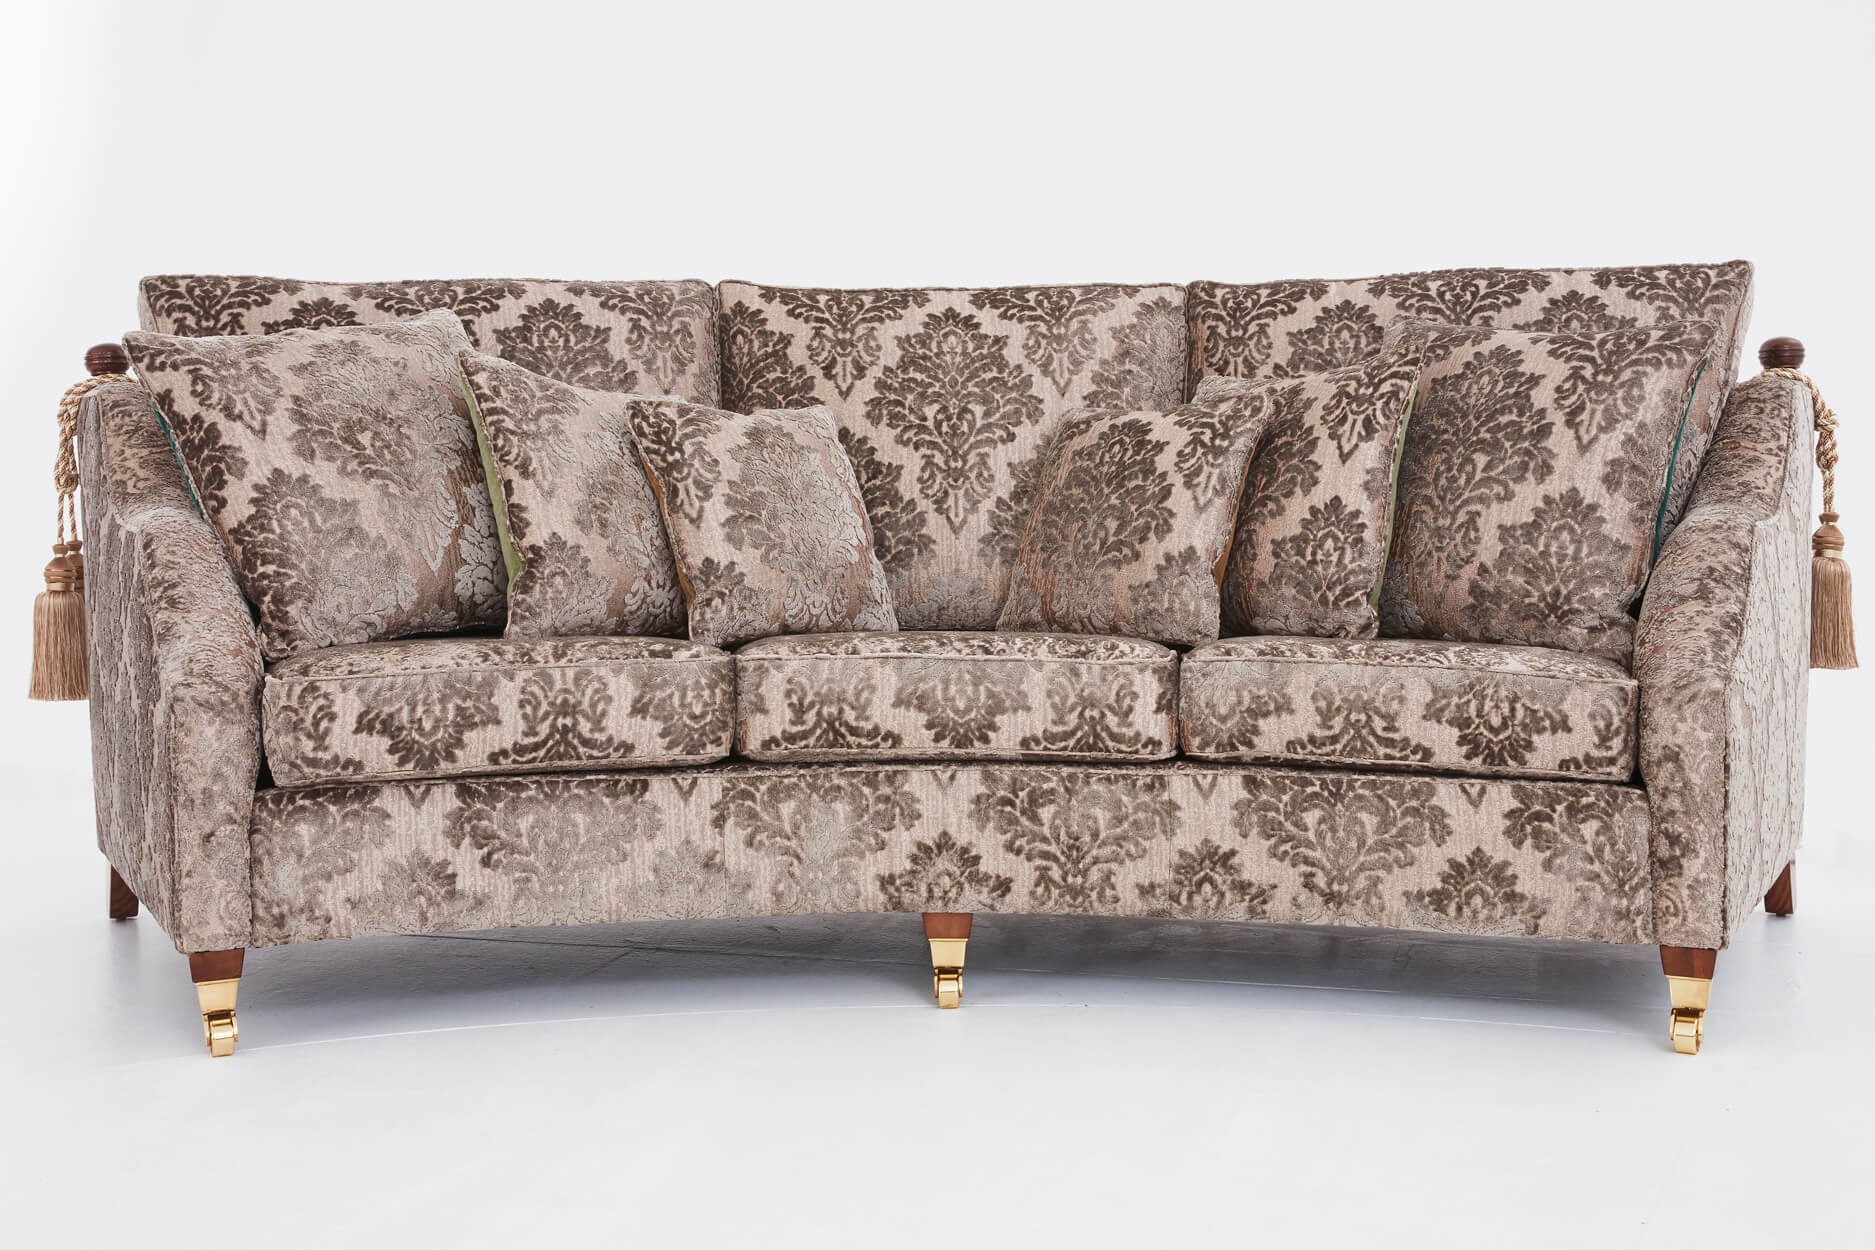 Luxury Designer Sofa By Luxury Interior designer, Mark Alexander design